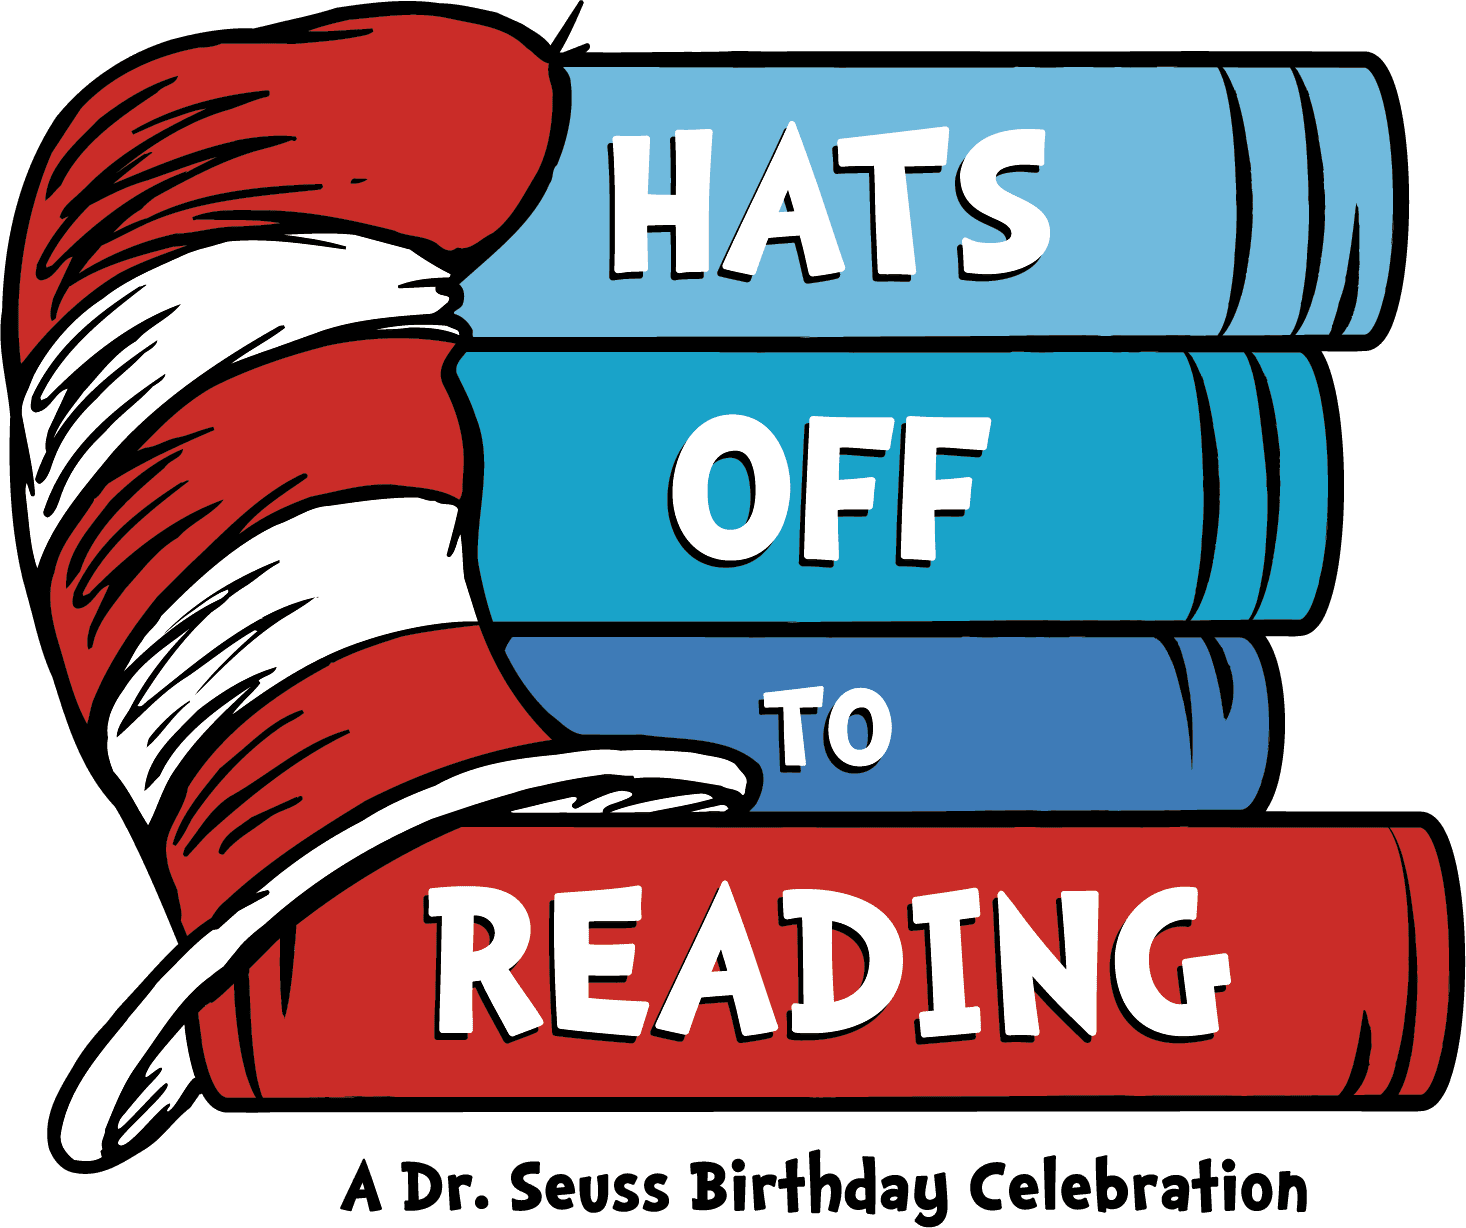 与苏斯博士一起庆祝阅读和“向阅读脱帽致敬”(免费打印!) - 188滚球体育网站